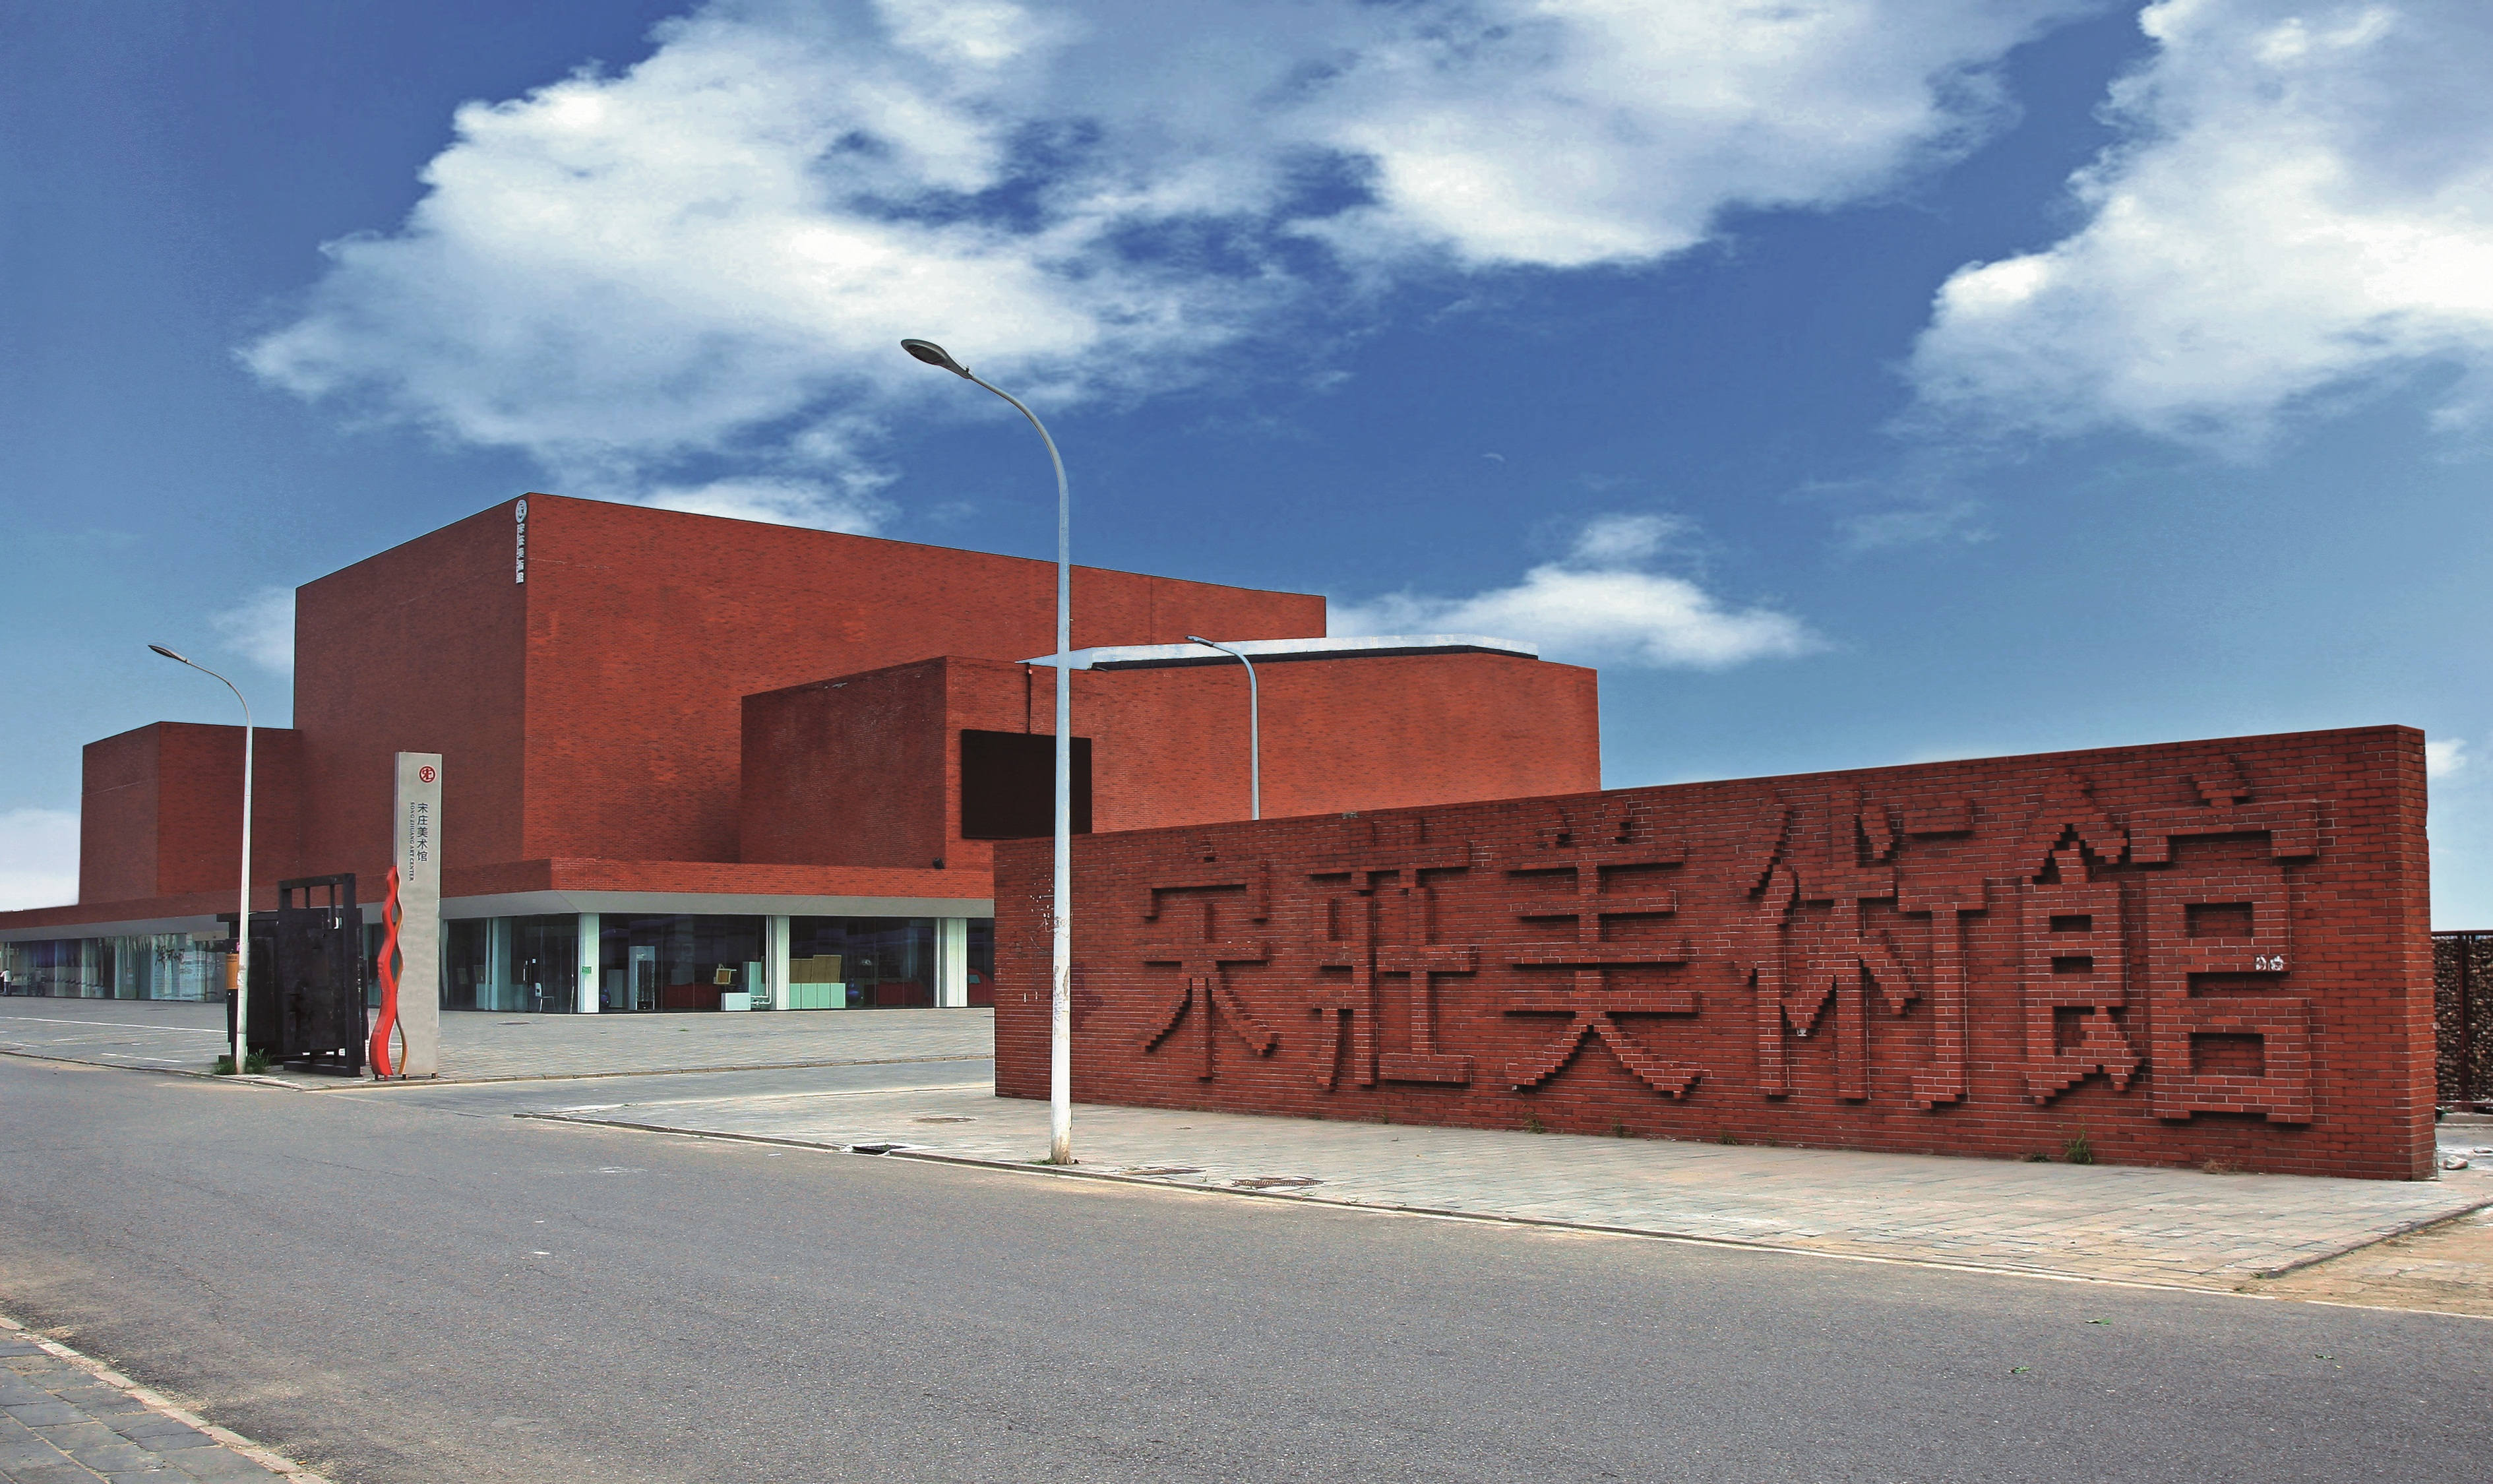 北京宋庄画家村位置图片